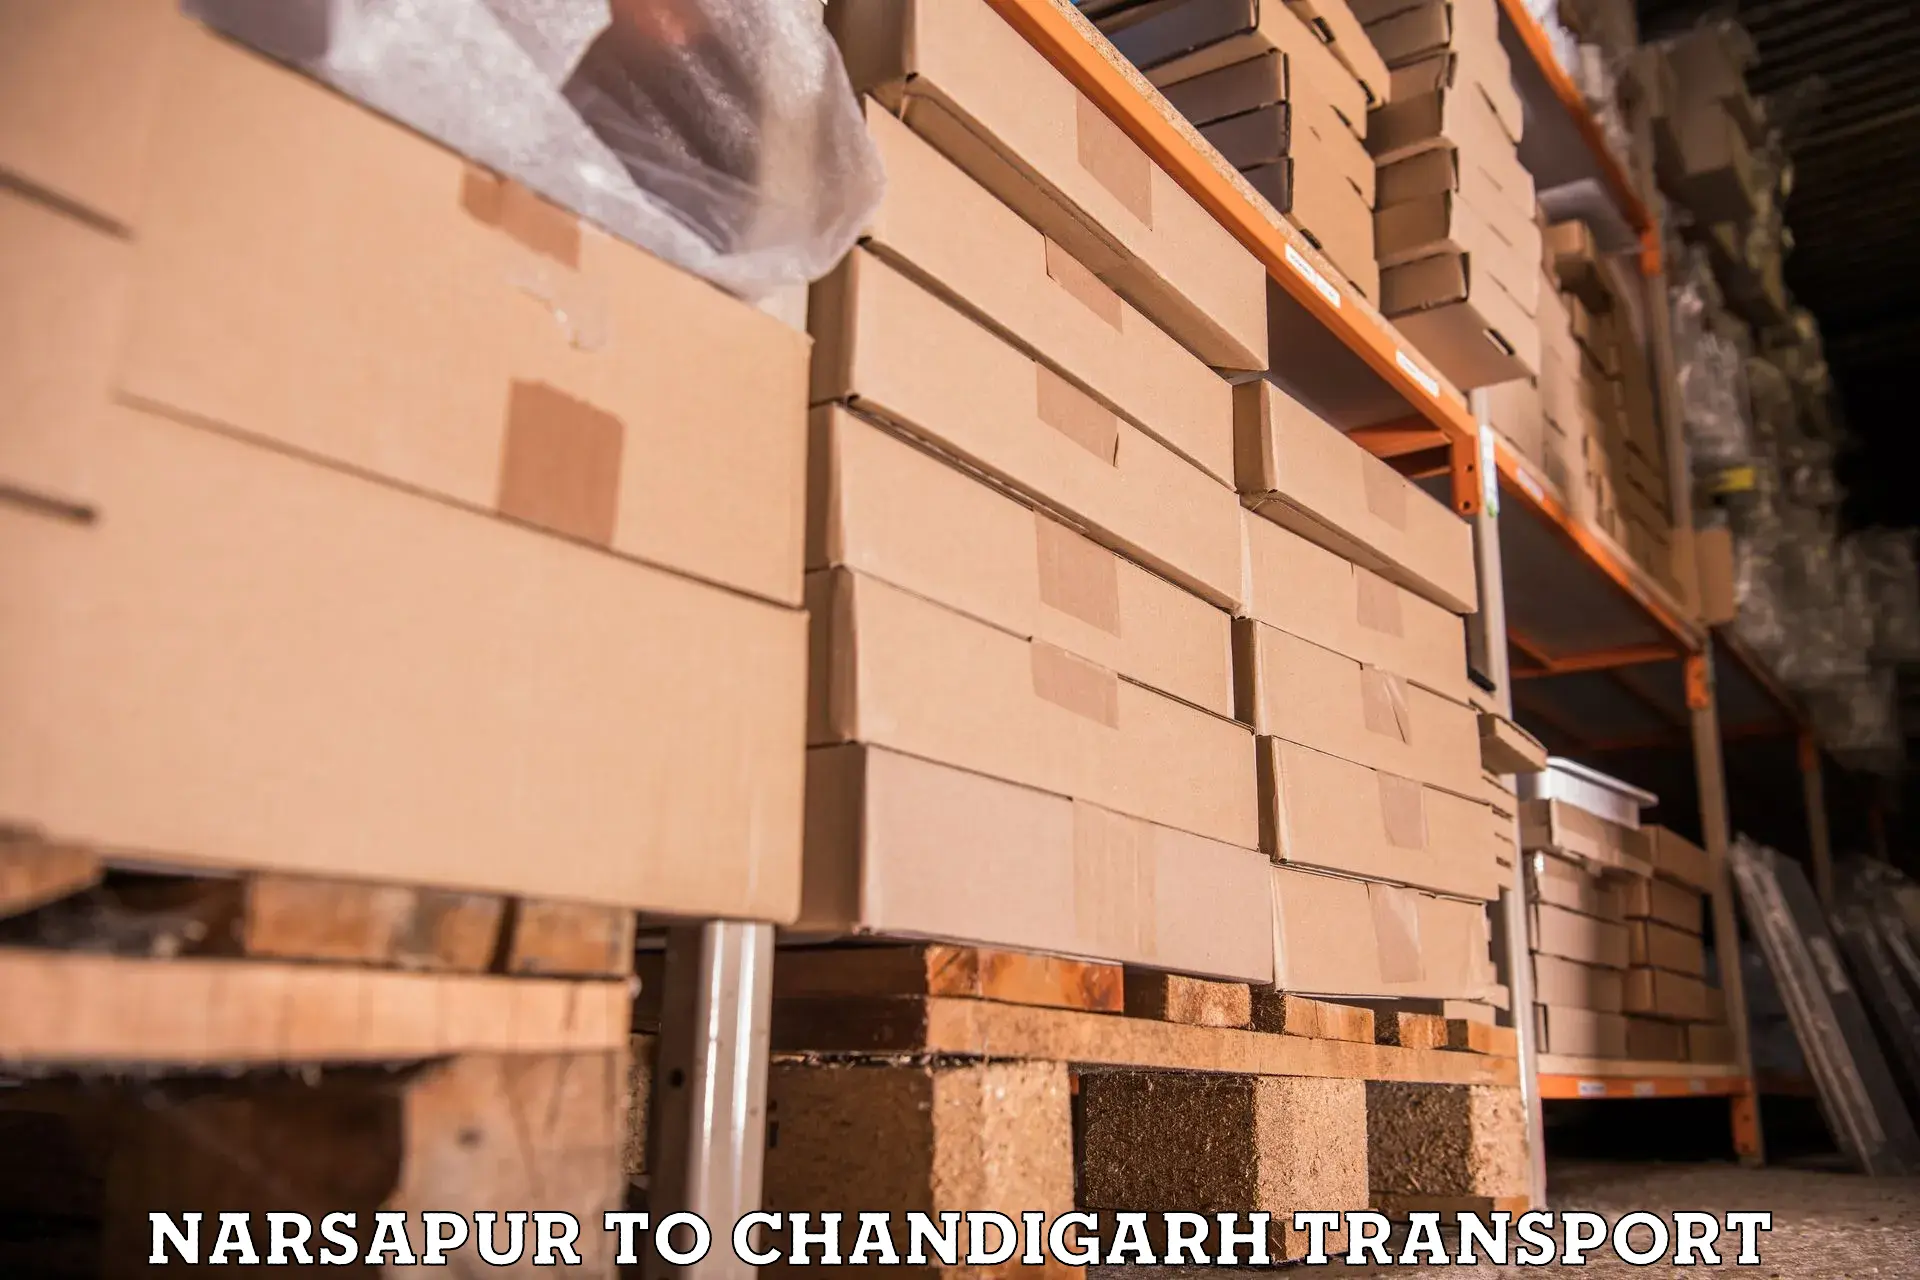 Online transport service Narsapur to Chandigarh